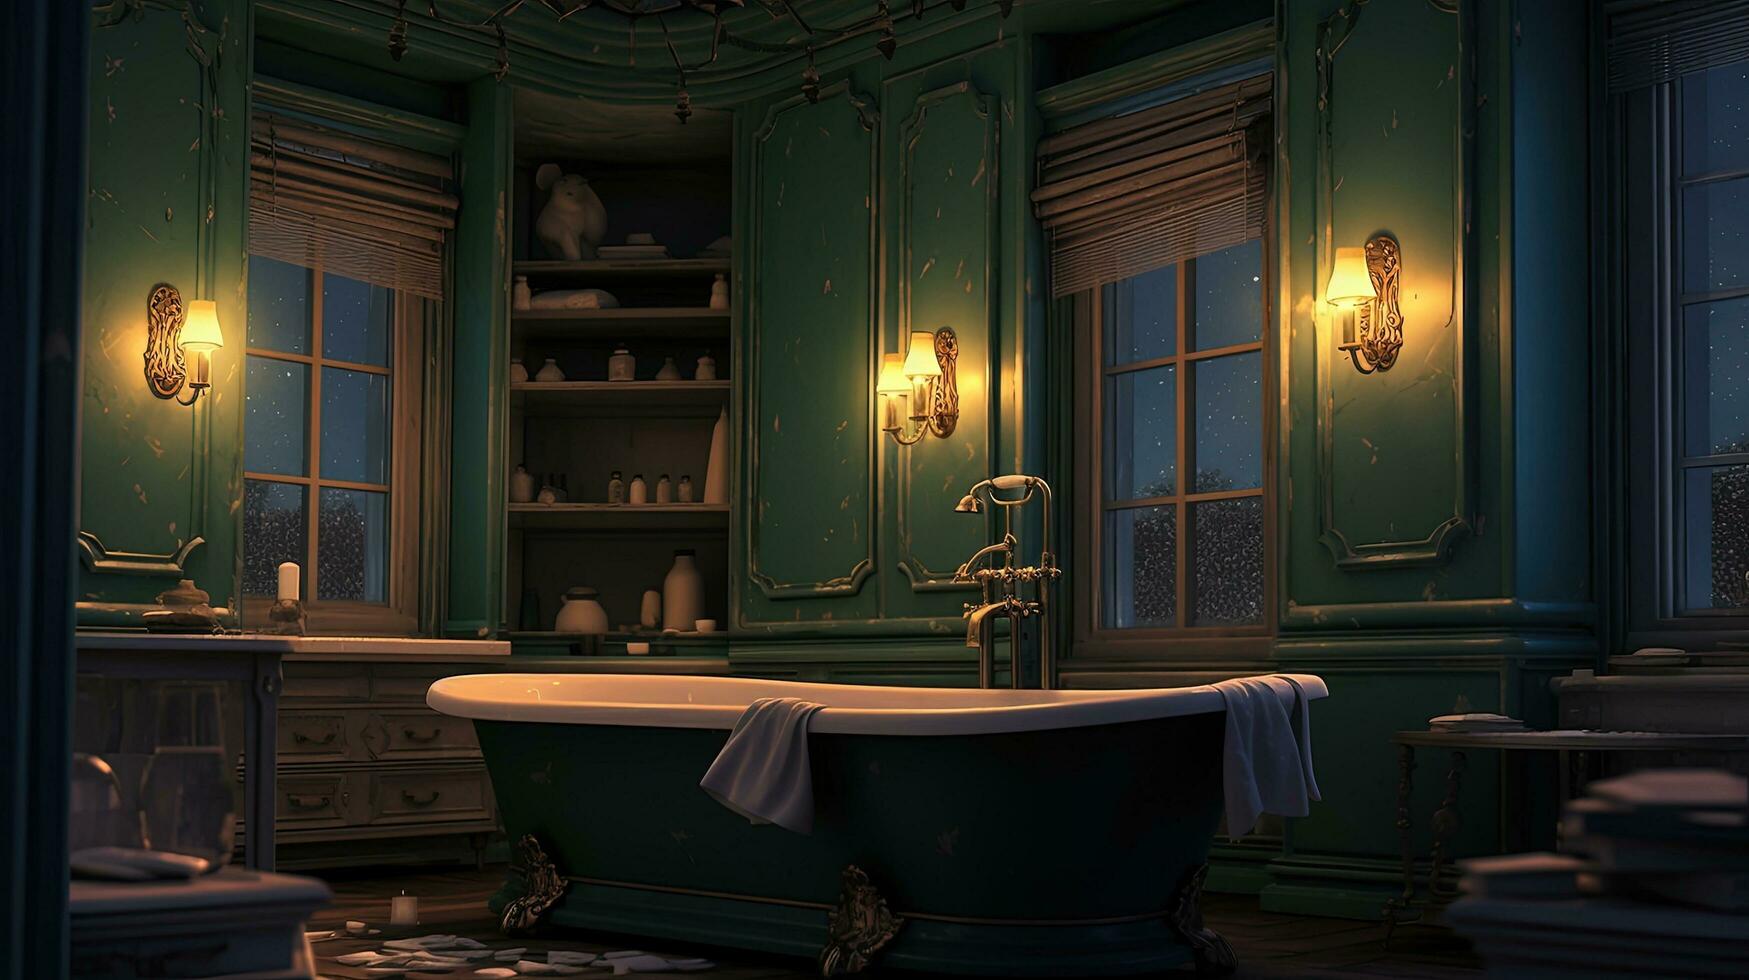 generativ ai, Innere von modern Badezimmer mit Verbrennung Kerzen im Abend. romantisch Atmosphäre, Spa und entspannen Konzept foto